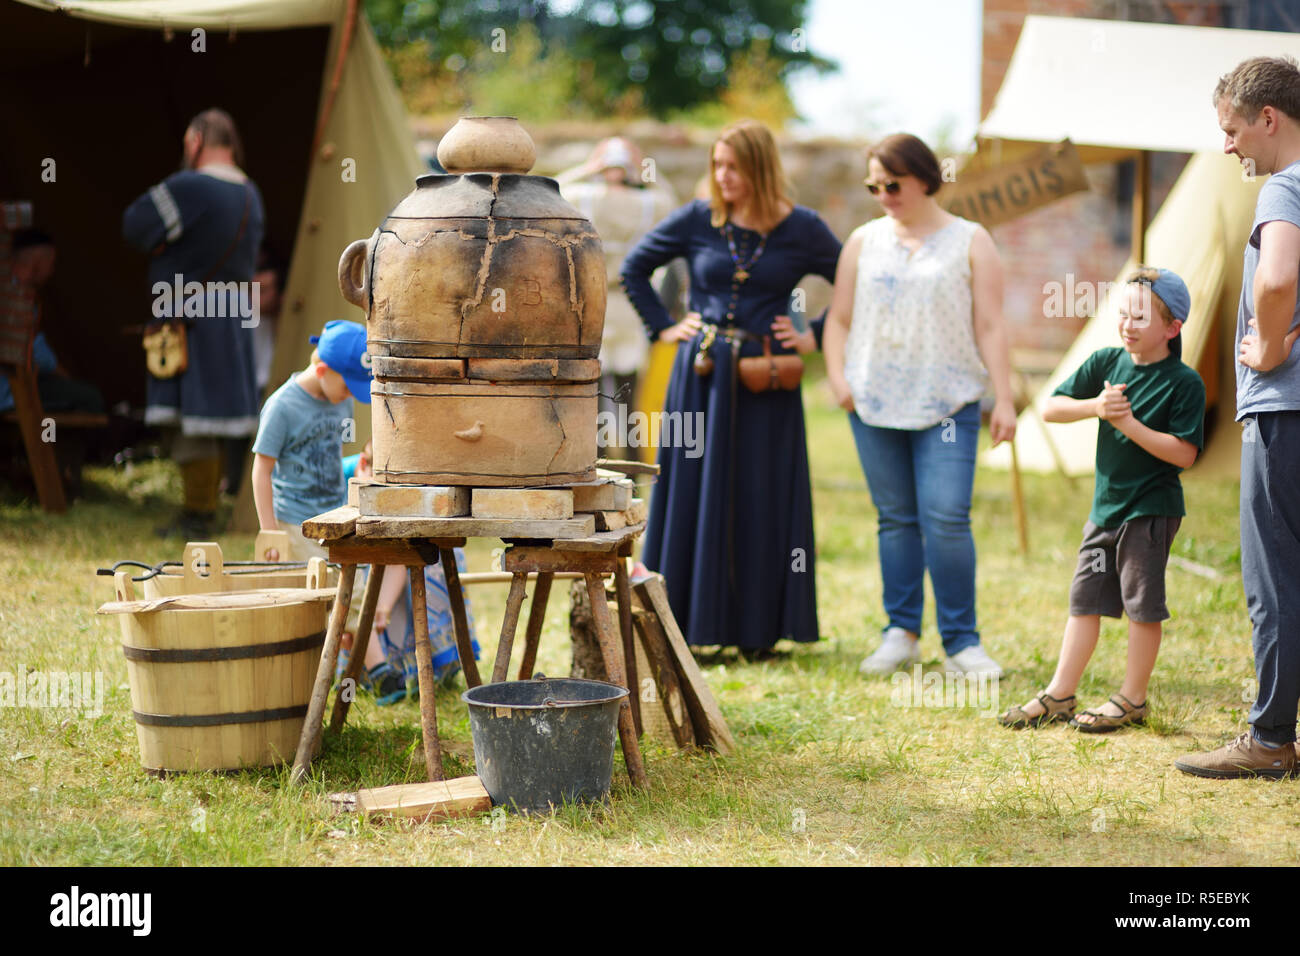 TRAKAI, Litauen - 16. JUNI 2018: Leute, die auf der Suche am Schmelzofen während historische Reenactment auf jährliche Mittelalter Festival, in Trakai Peninsu gehalten Stockfoto